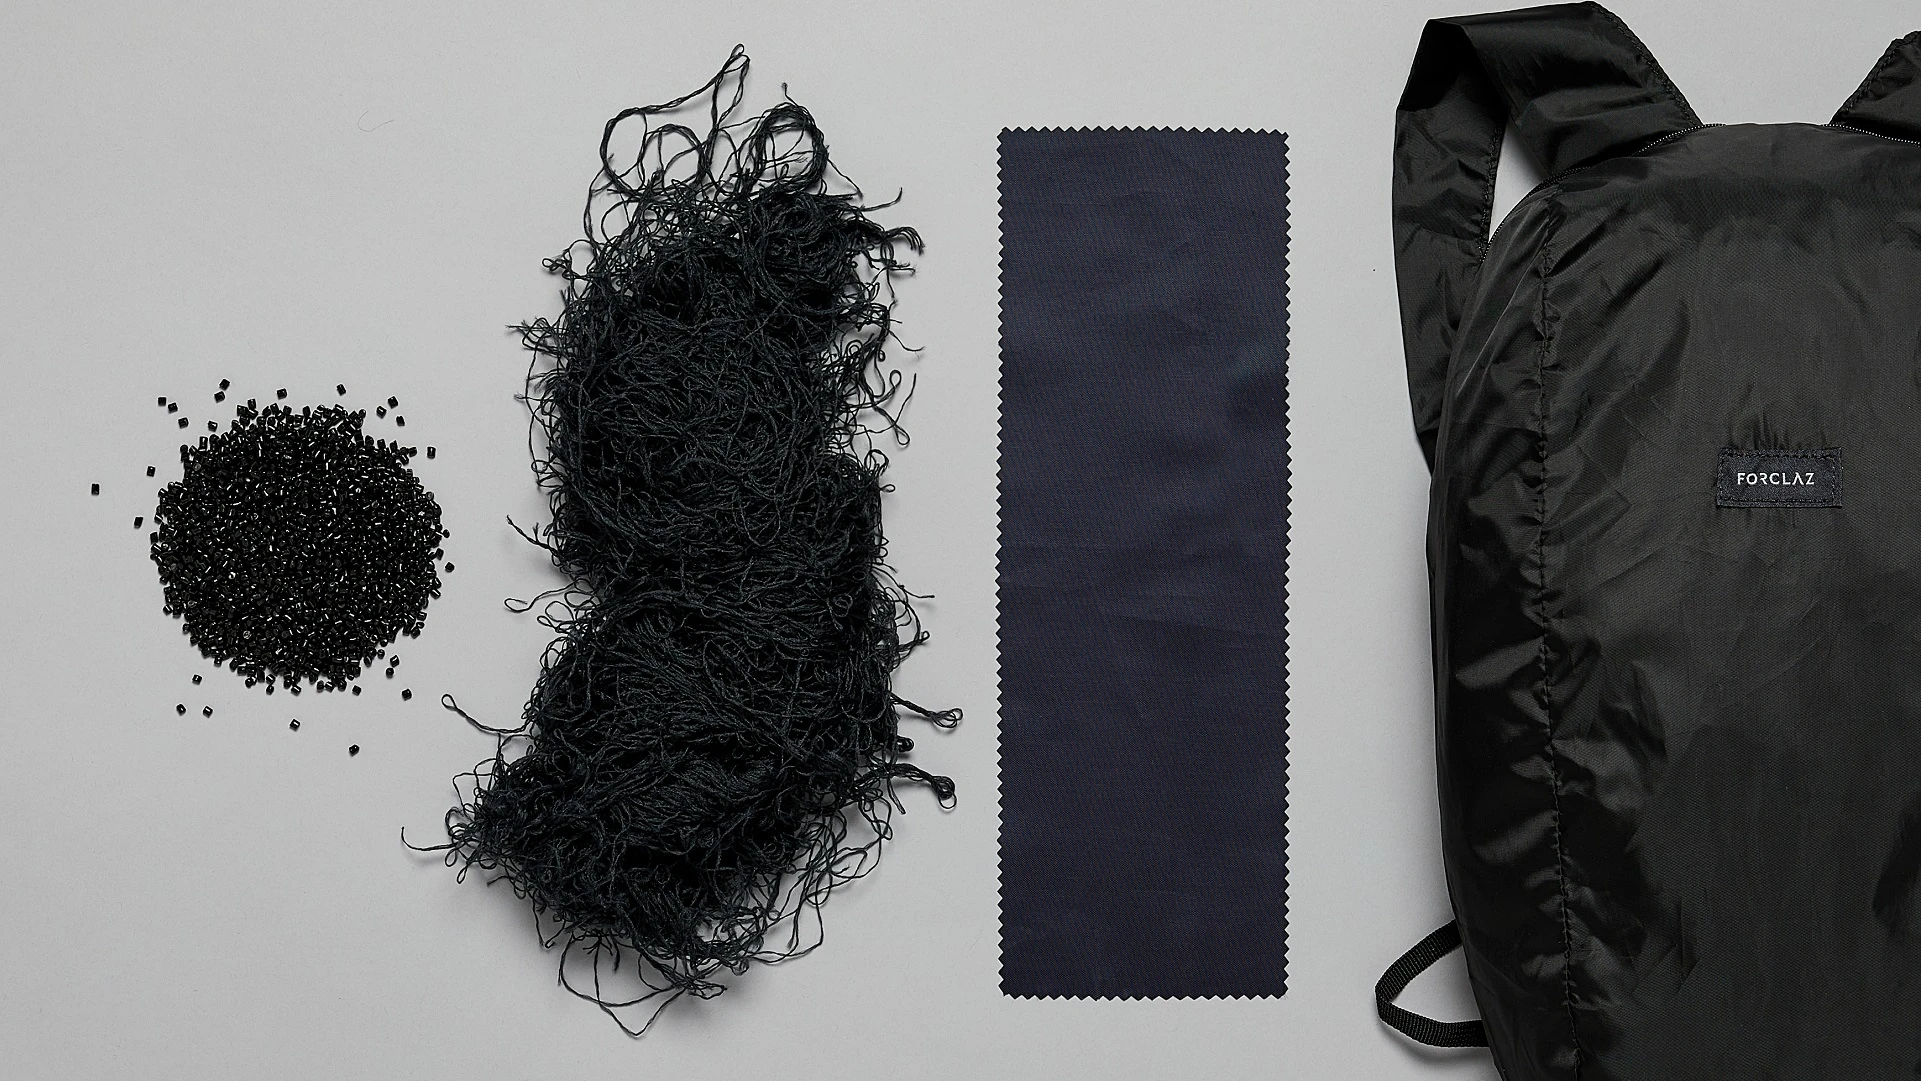 可持续材料从原始塑料到缝制成背包的织物的进步。